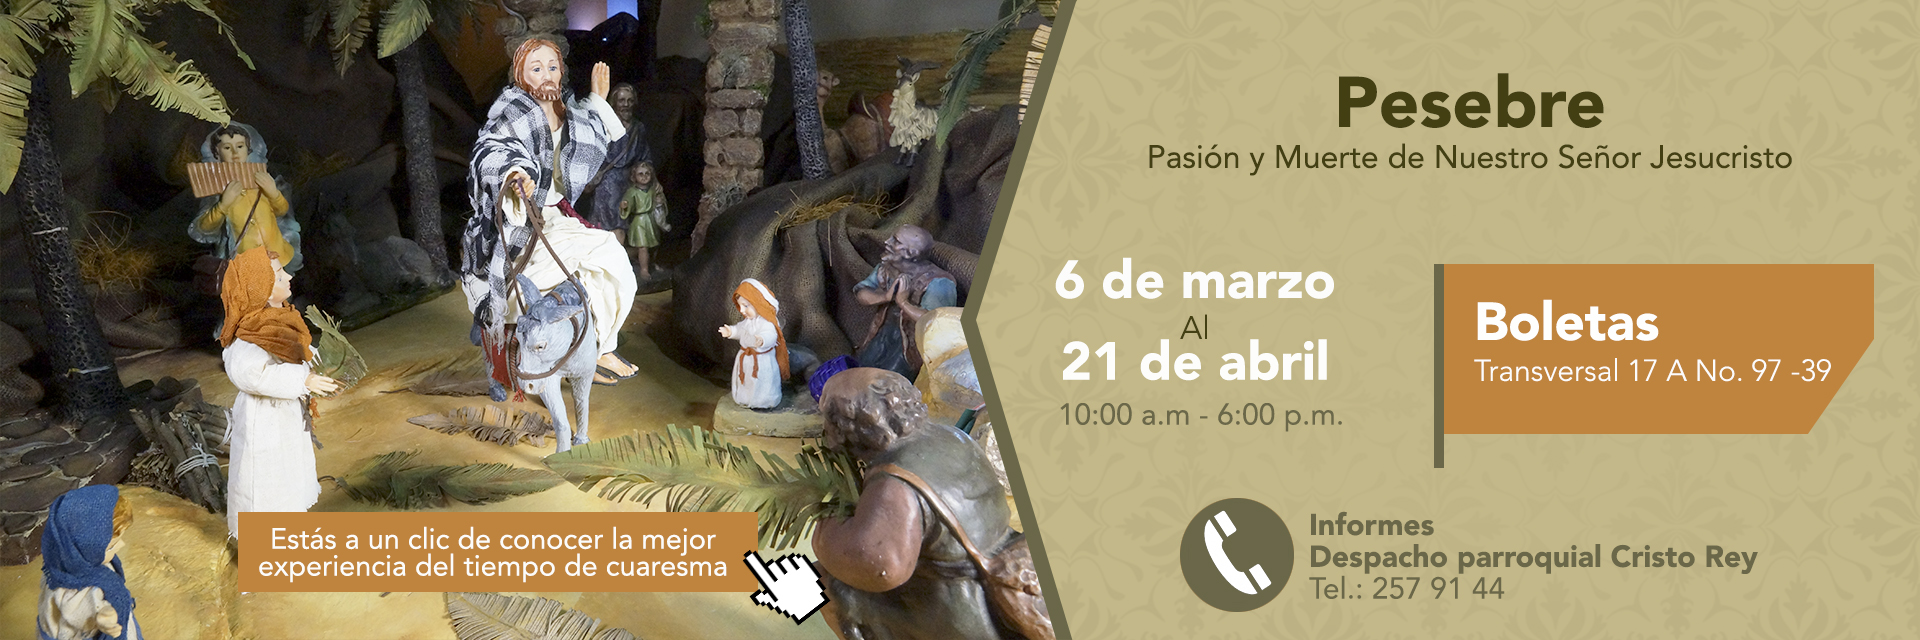 Invitación - Pesebre: Pasión y Muerte de Nuestro Señor Jesucristo |  Arquidiócesis de Bogotá